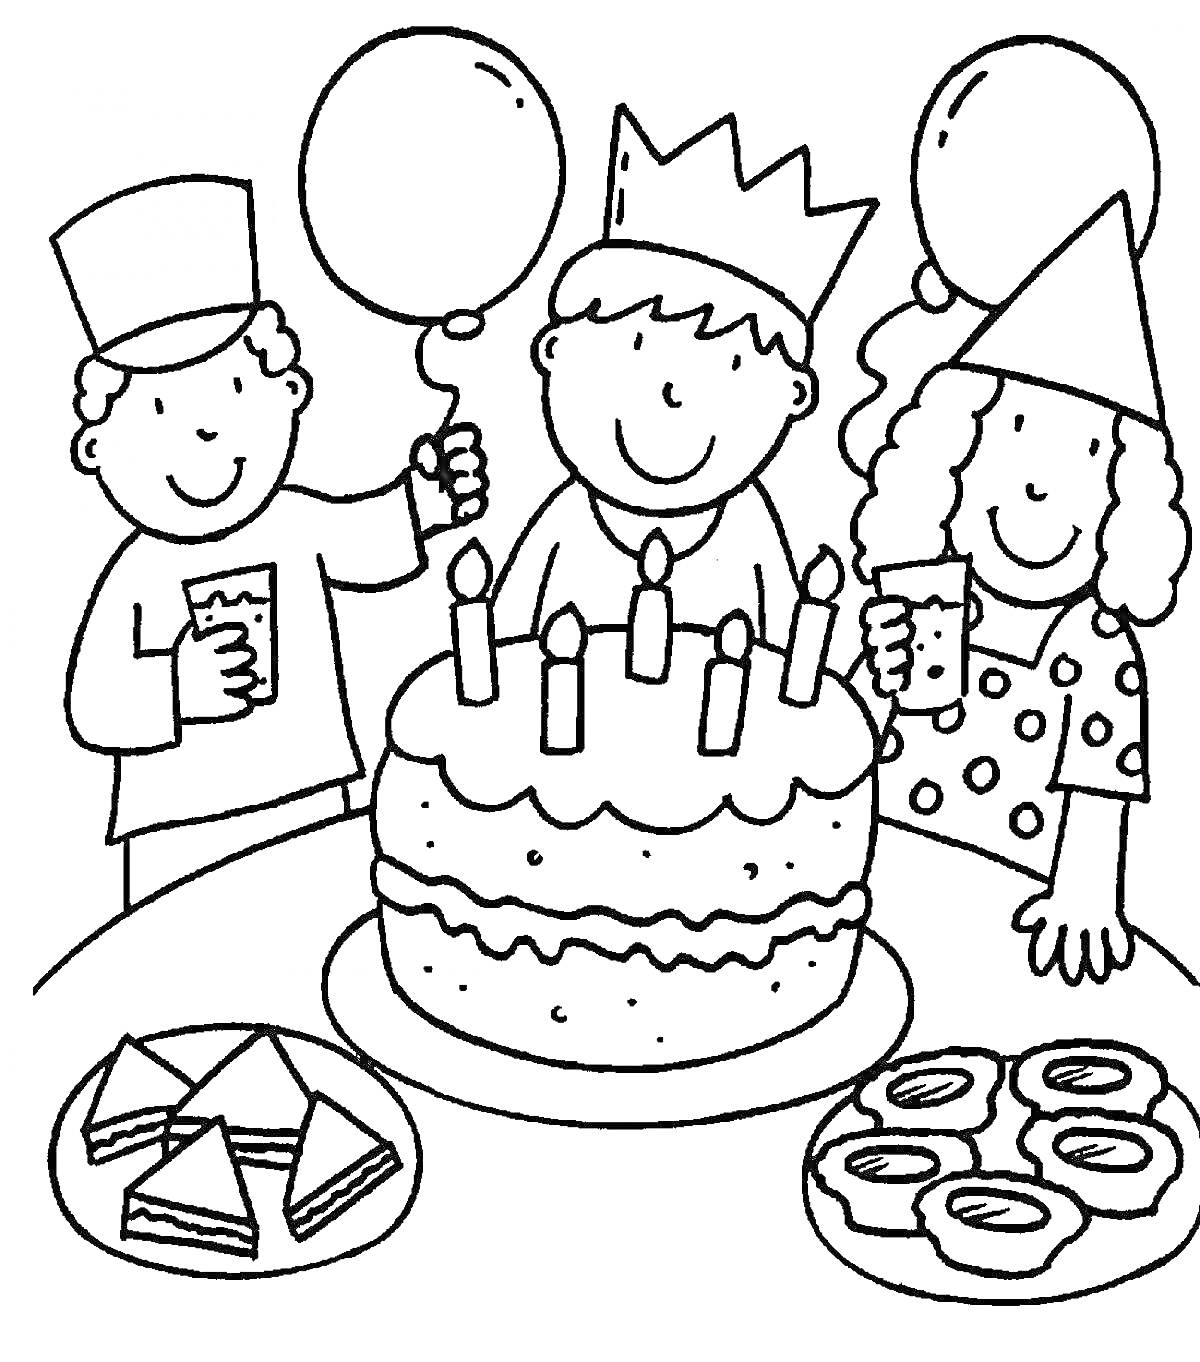 Дети на вечеринке с тортом, свечами, воздушными шарами, треугольными бутербродами и пончиками.